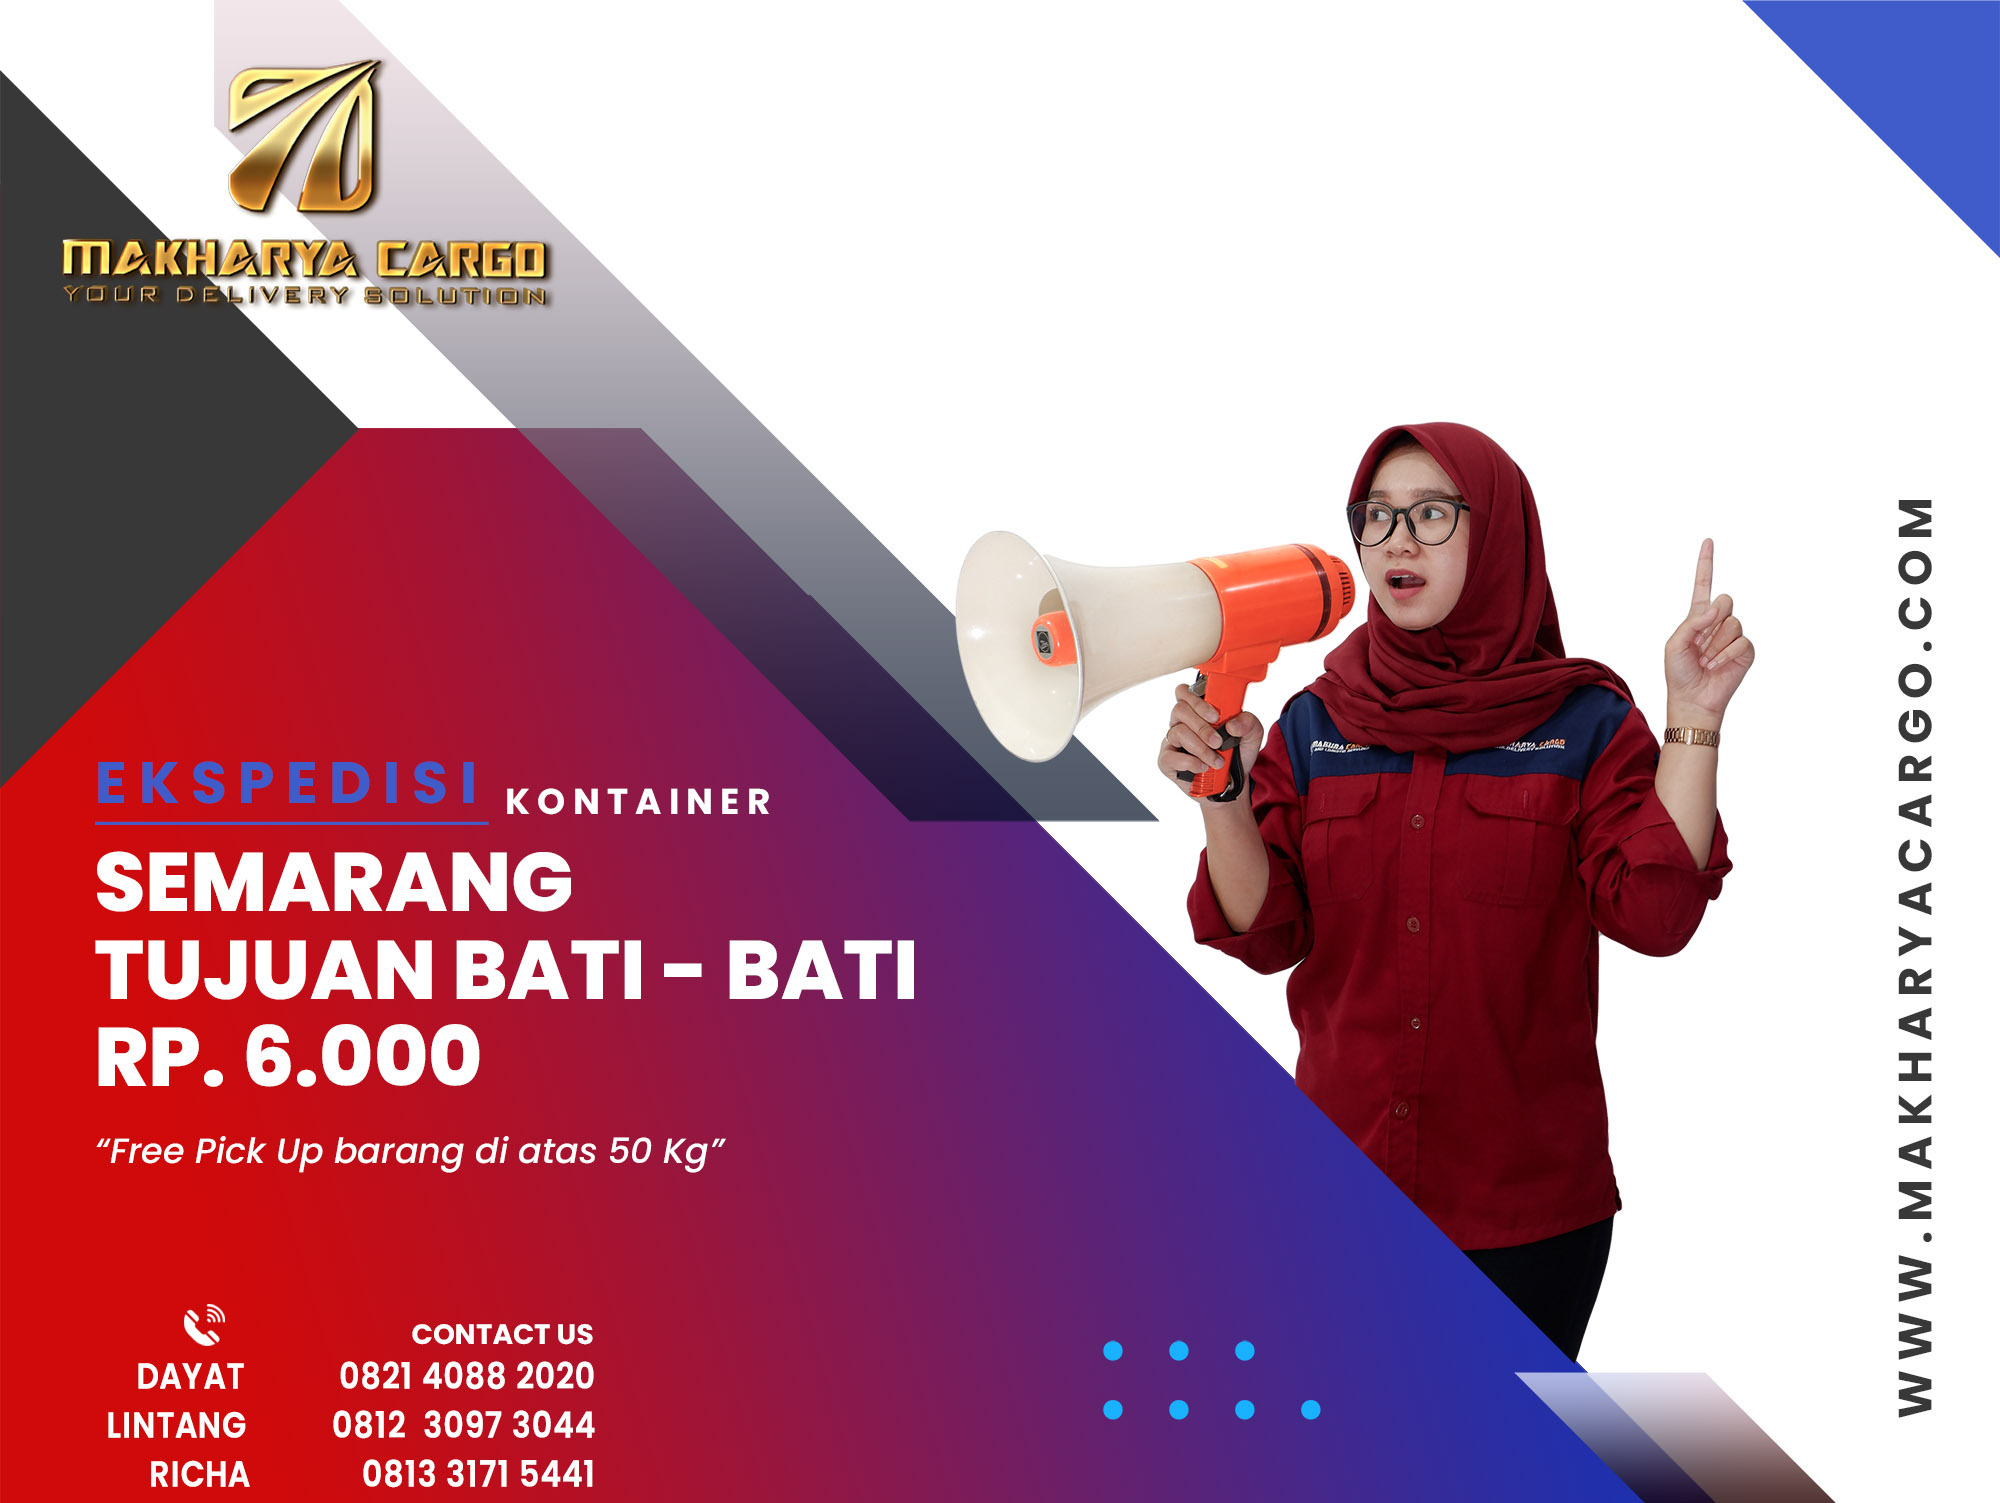 Ekspedisi Kontainer Semarang Bati Bati